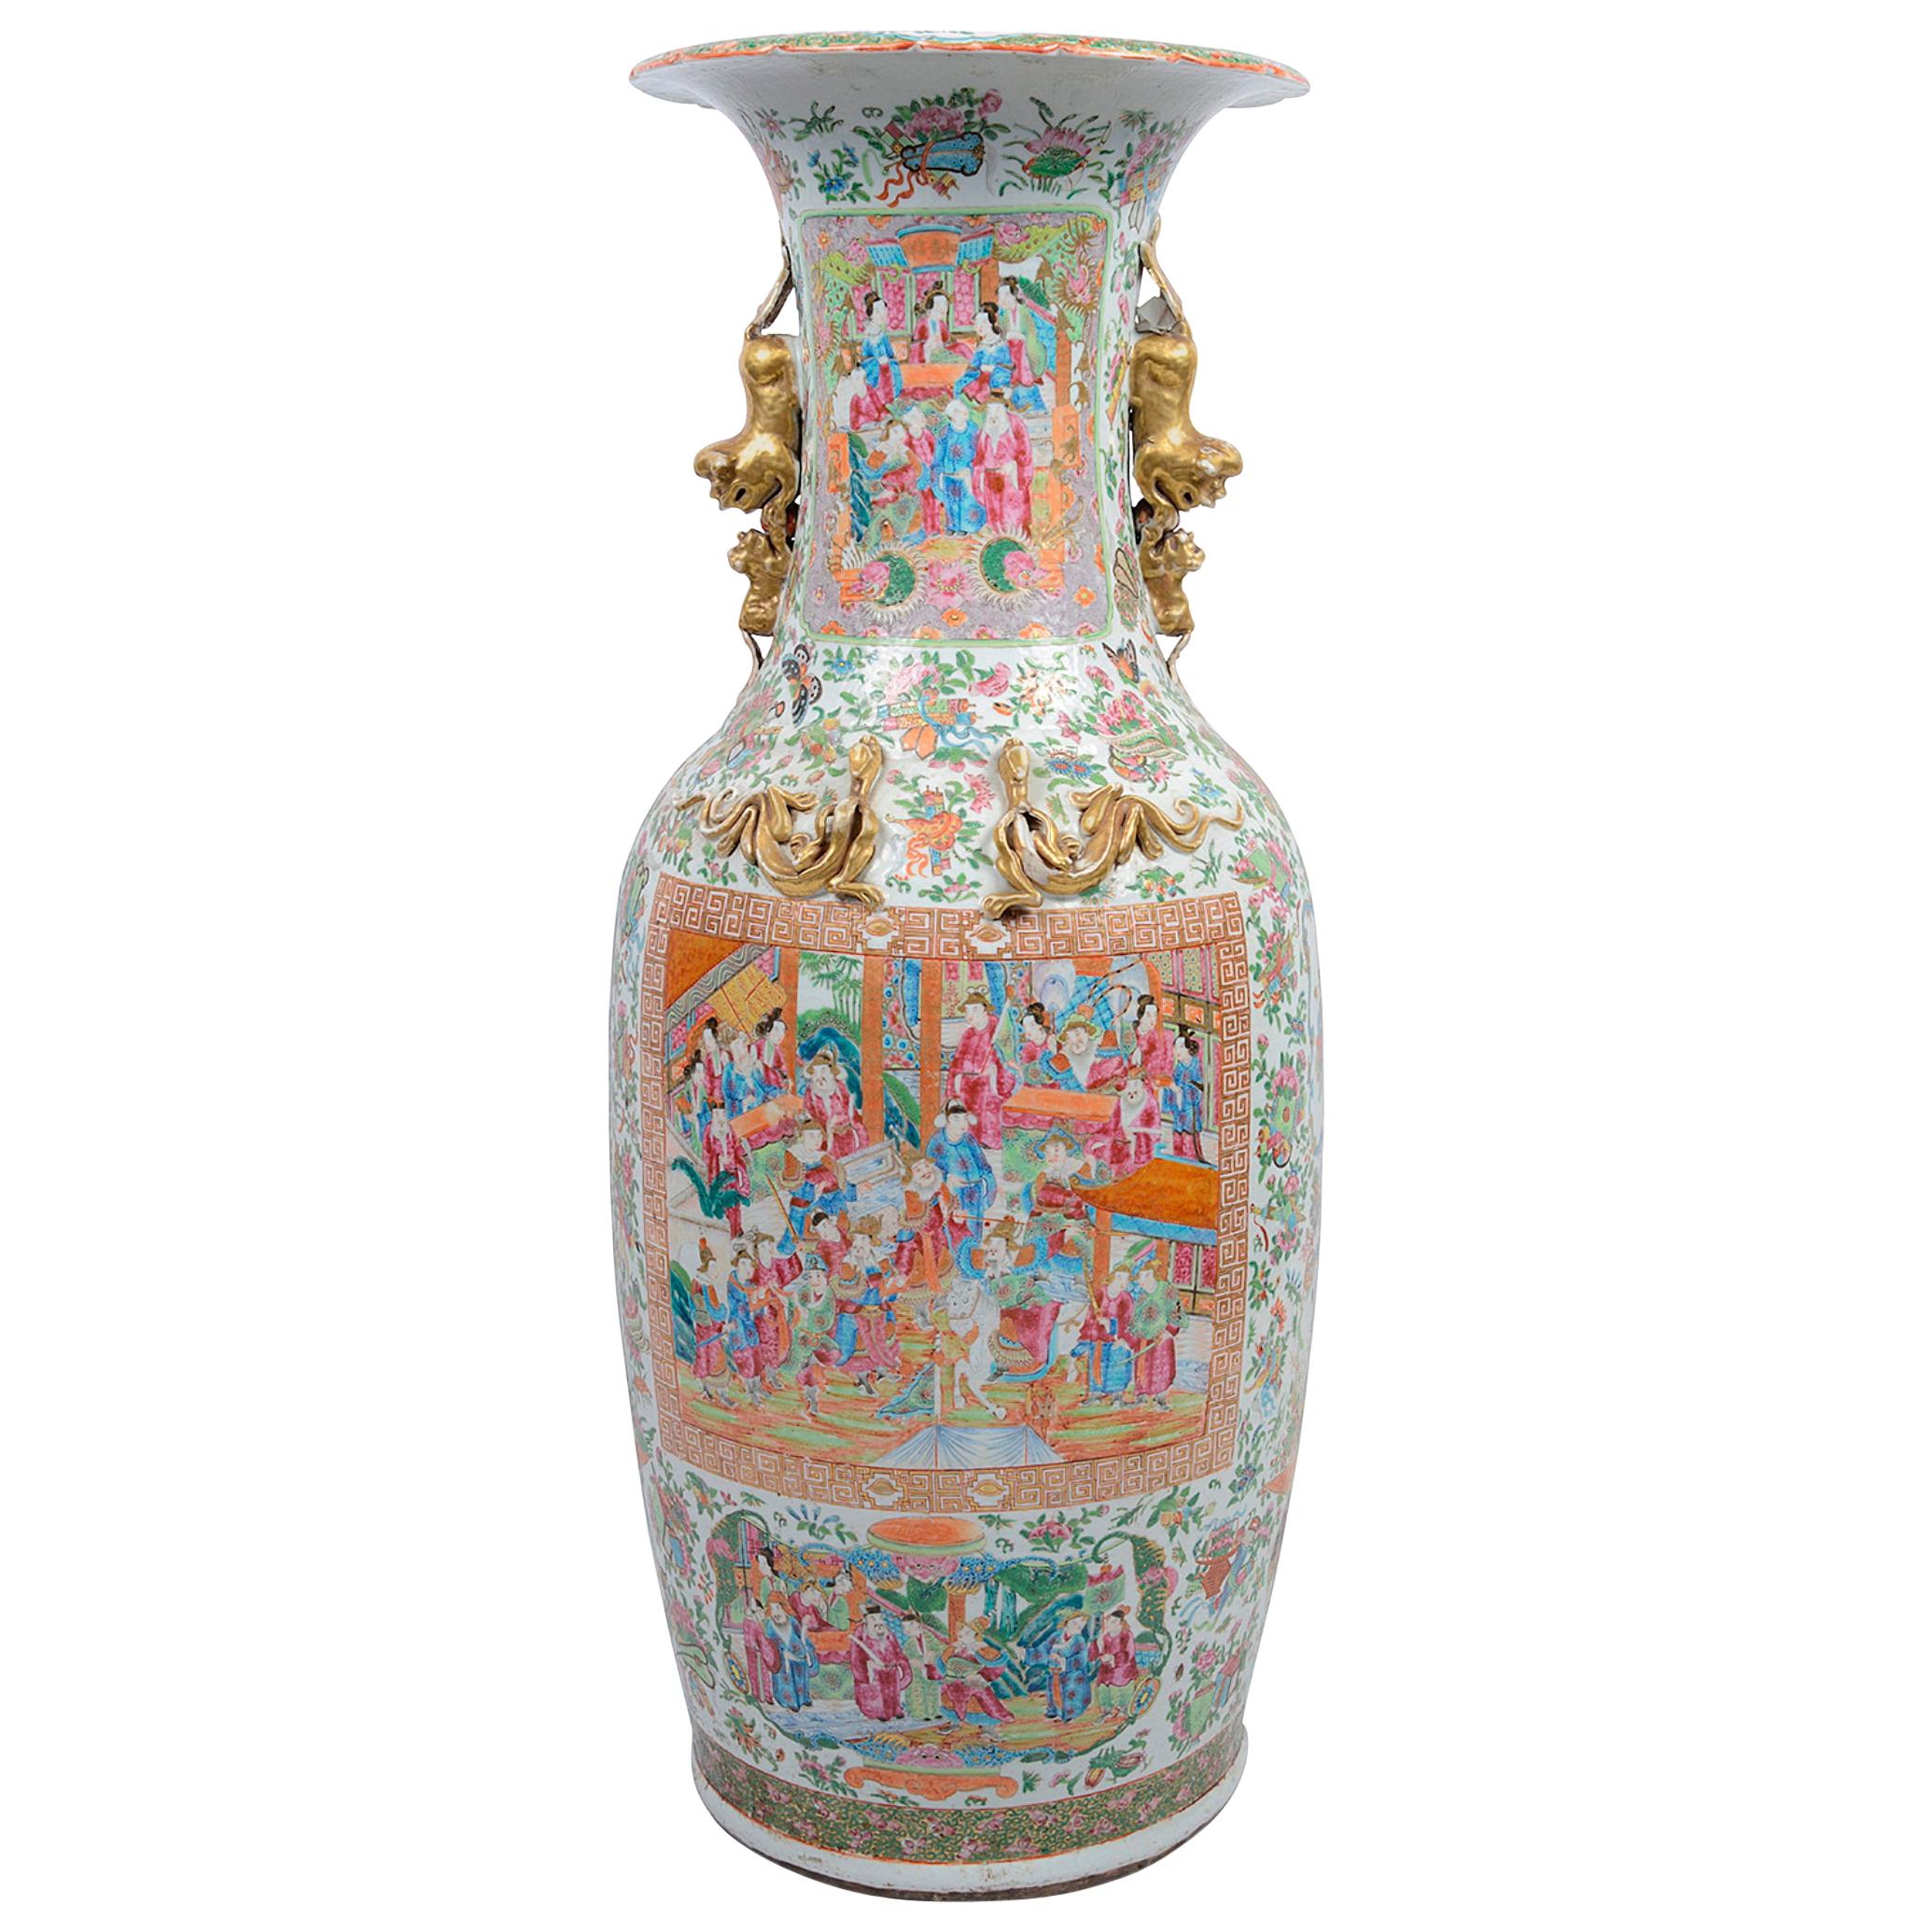 Grand vase cantonéen à médaillons roses du 19ème siècle